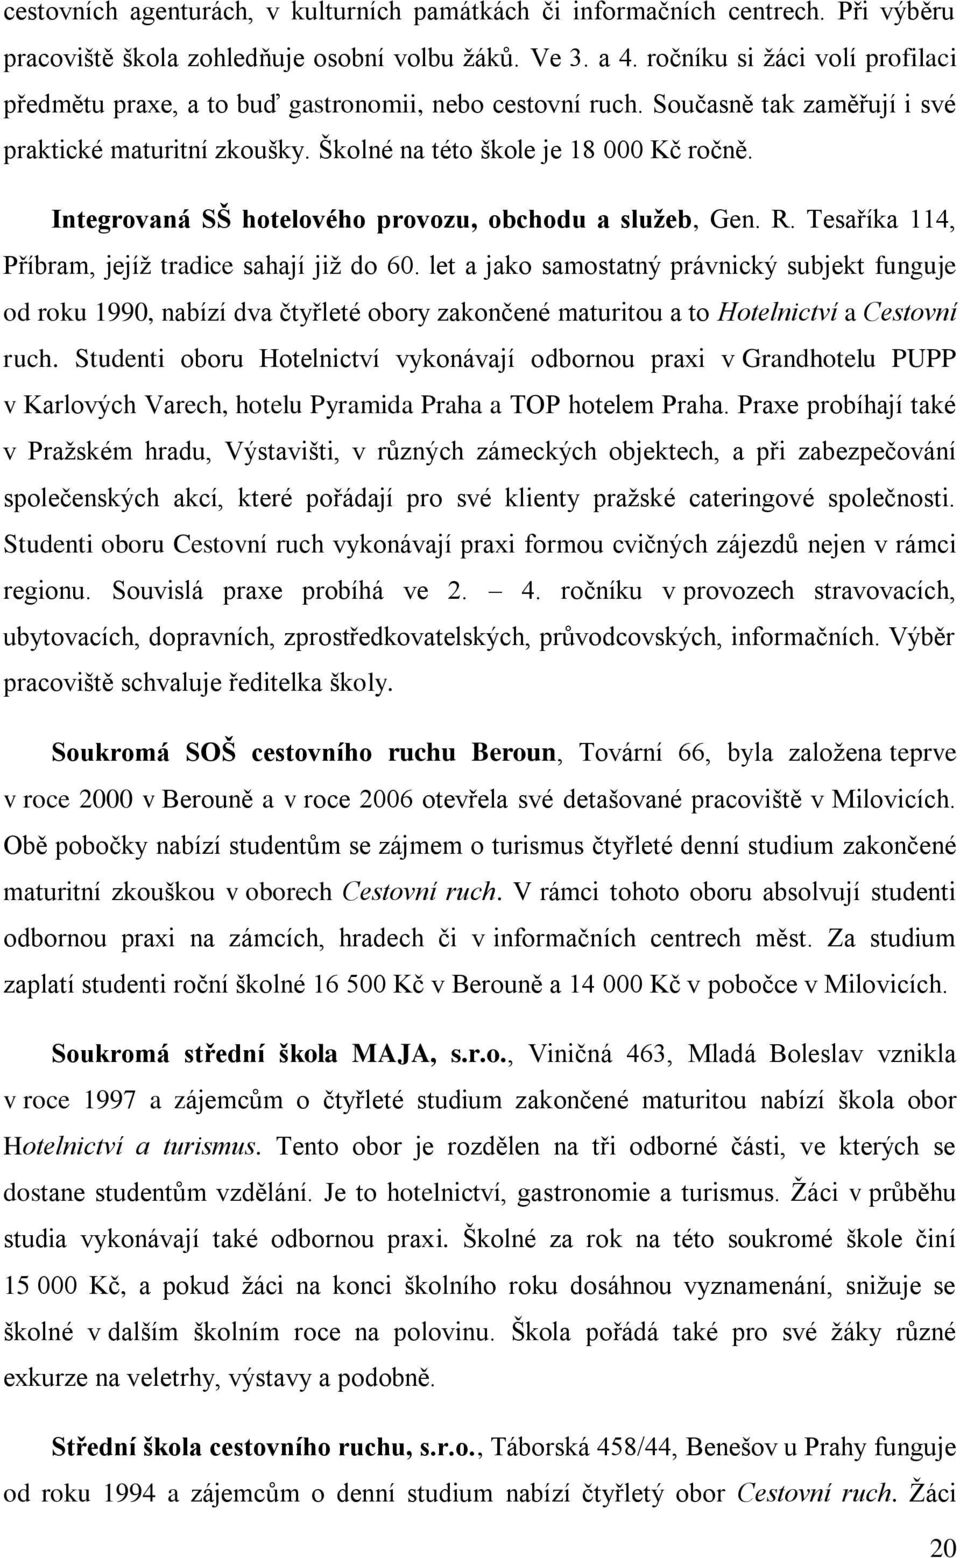 Integrovaná SŠ hotelového provozu, obchodu a sluţeb, Gen. R. Tesaříka 114, Příbram, jejíţ tradice sahají jiţ do 60.